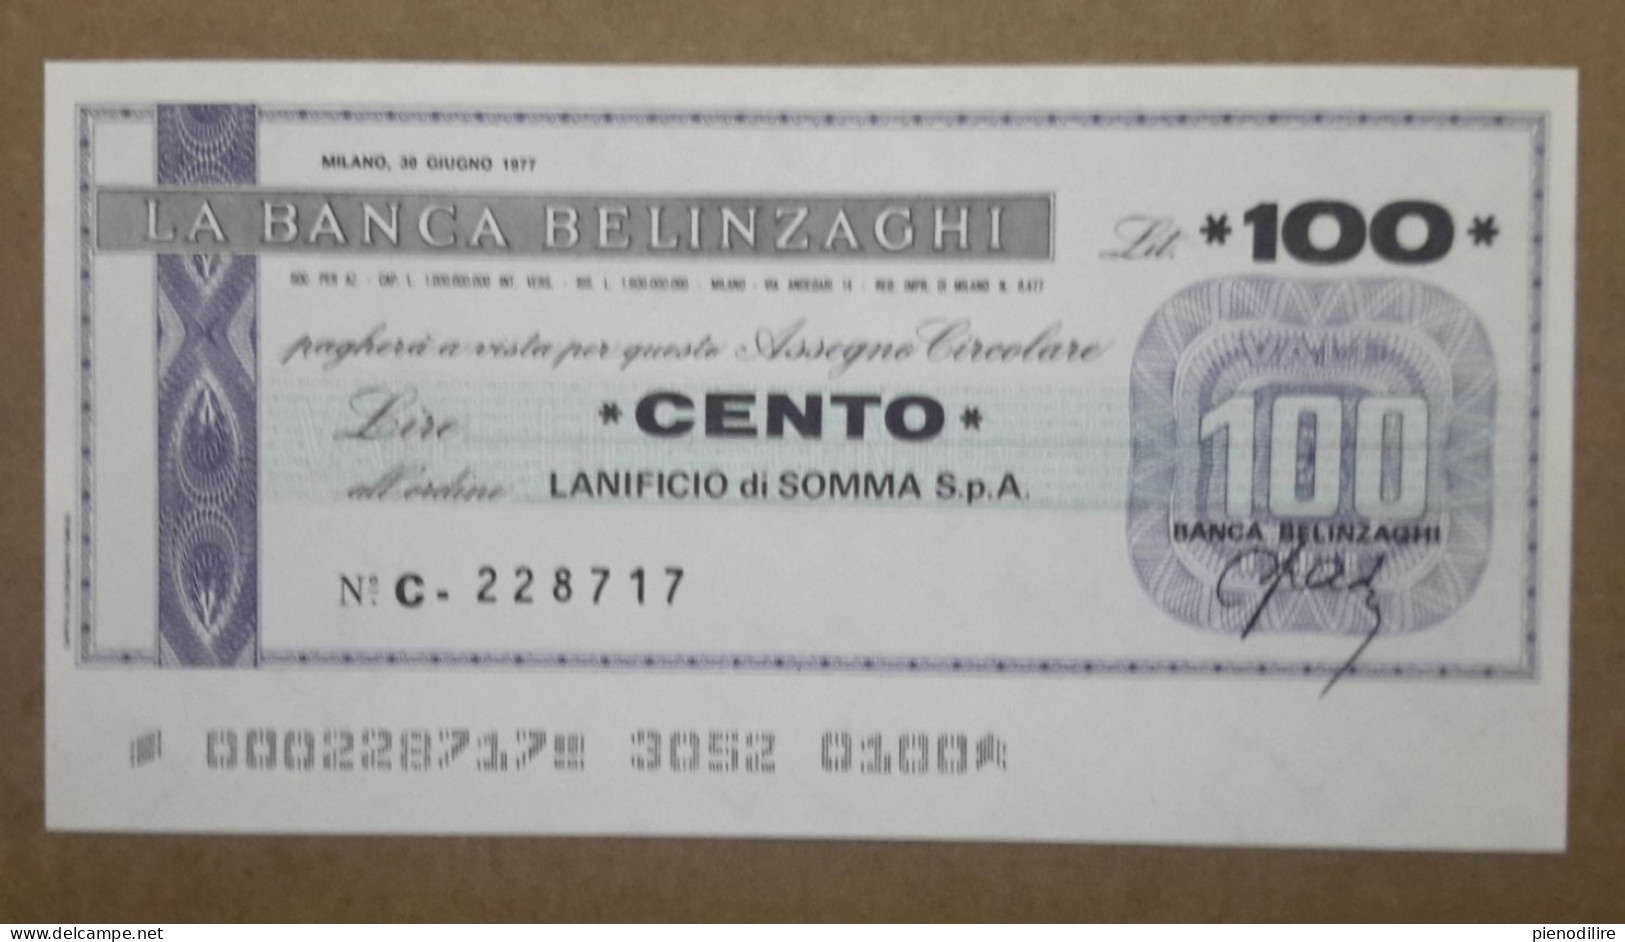 BANCA BELINZAGHI, 100 LIRE 30.06.1977 LANIFICIO SOMMA S.P.A. MILANO (A1.88) - [10] Cheques En Mini-cheques